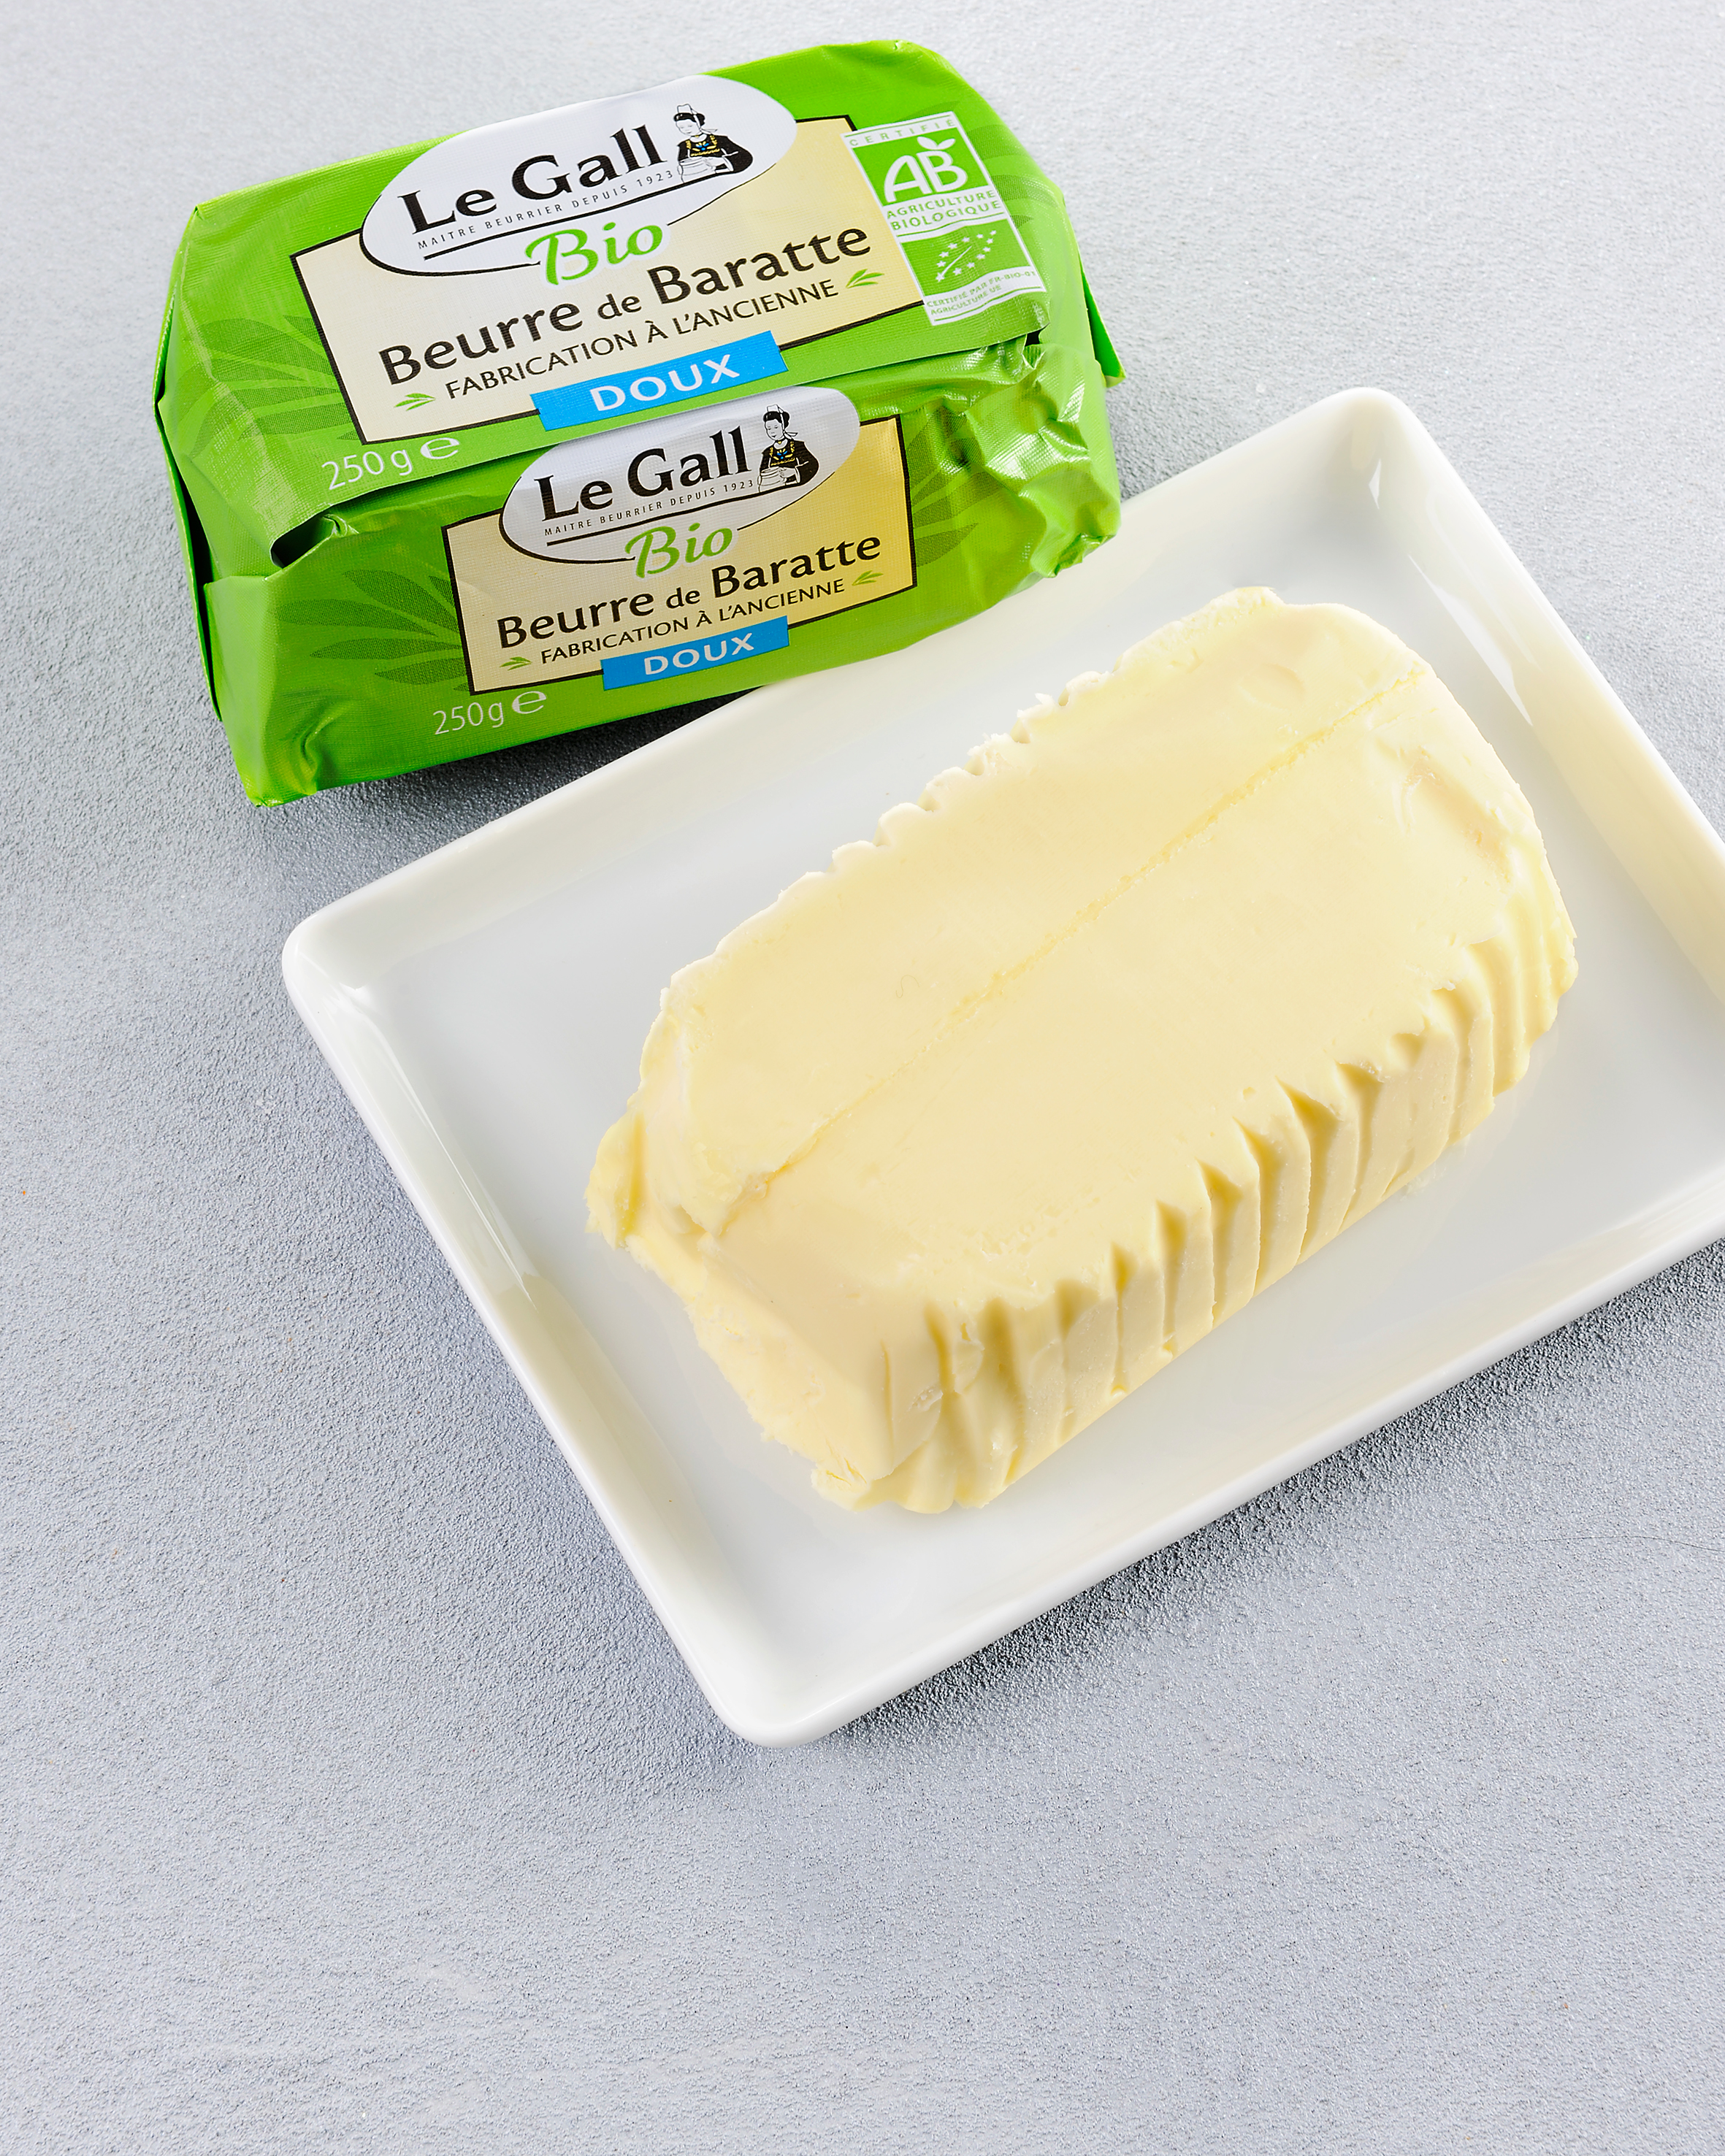 Le Beurre de baratte doux 250g BIO Le Gall - mon-marché.fr